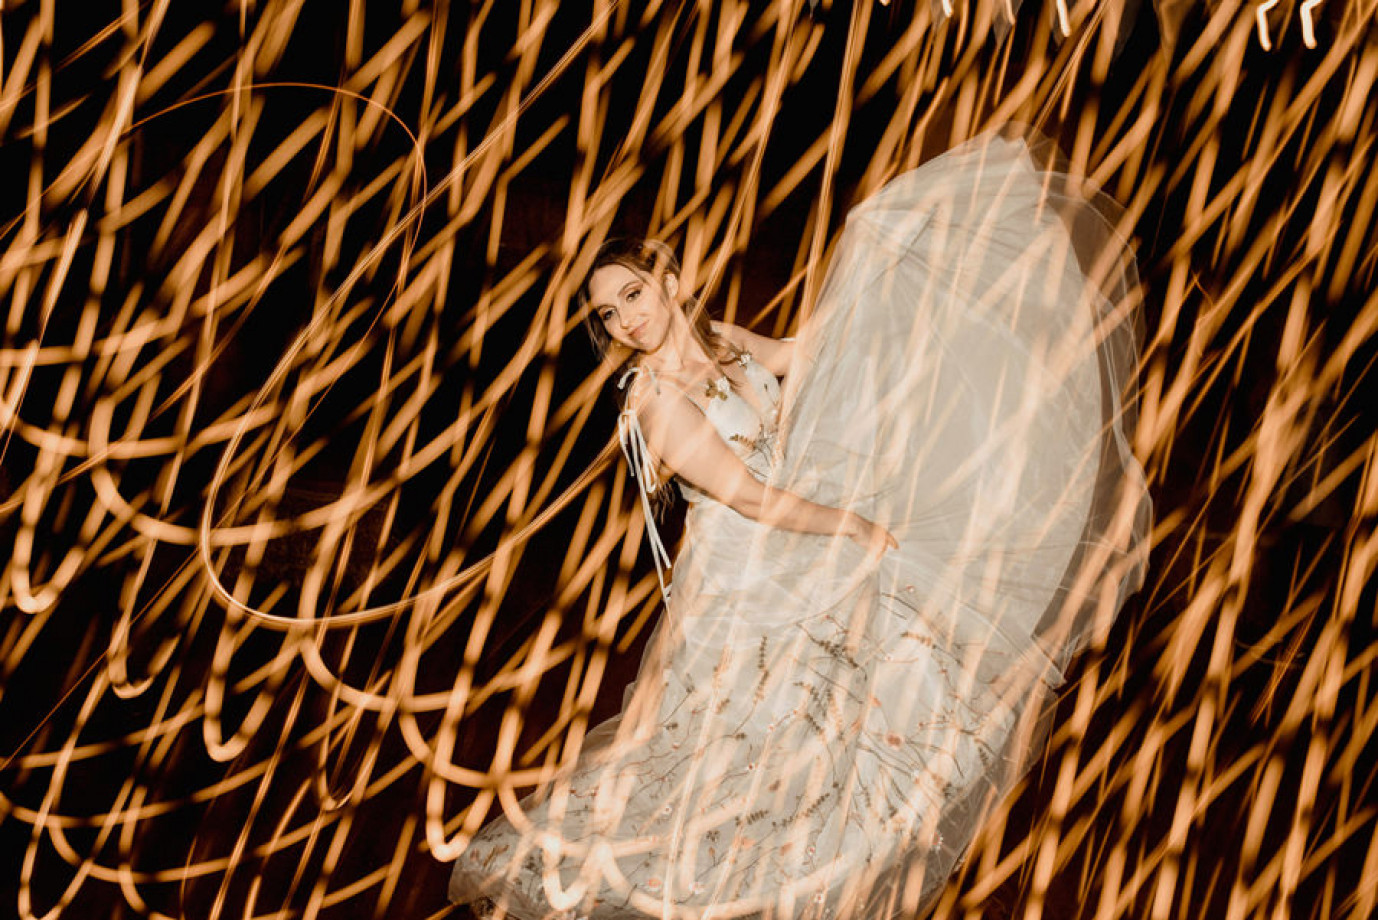 fotograf bytom fabryka-kreatywna portfolio zdjecia slubne inspiracje wesele plener slubny sesja slubna